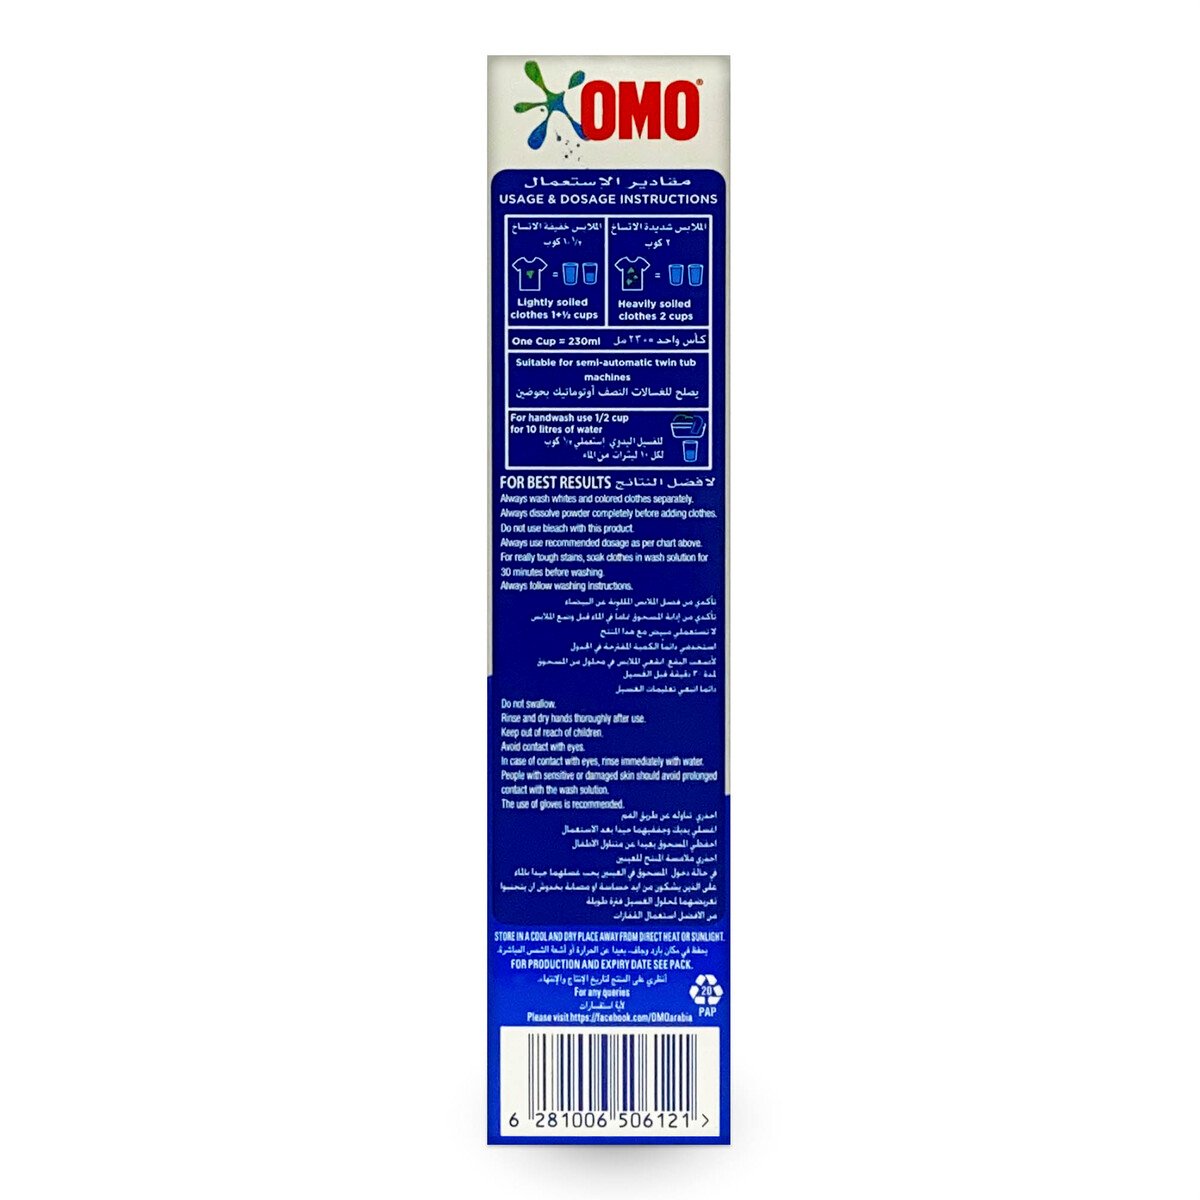 Omo Washing Powder Semi-Automatic 110g